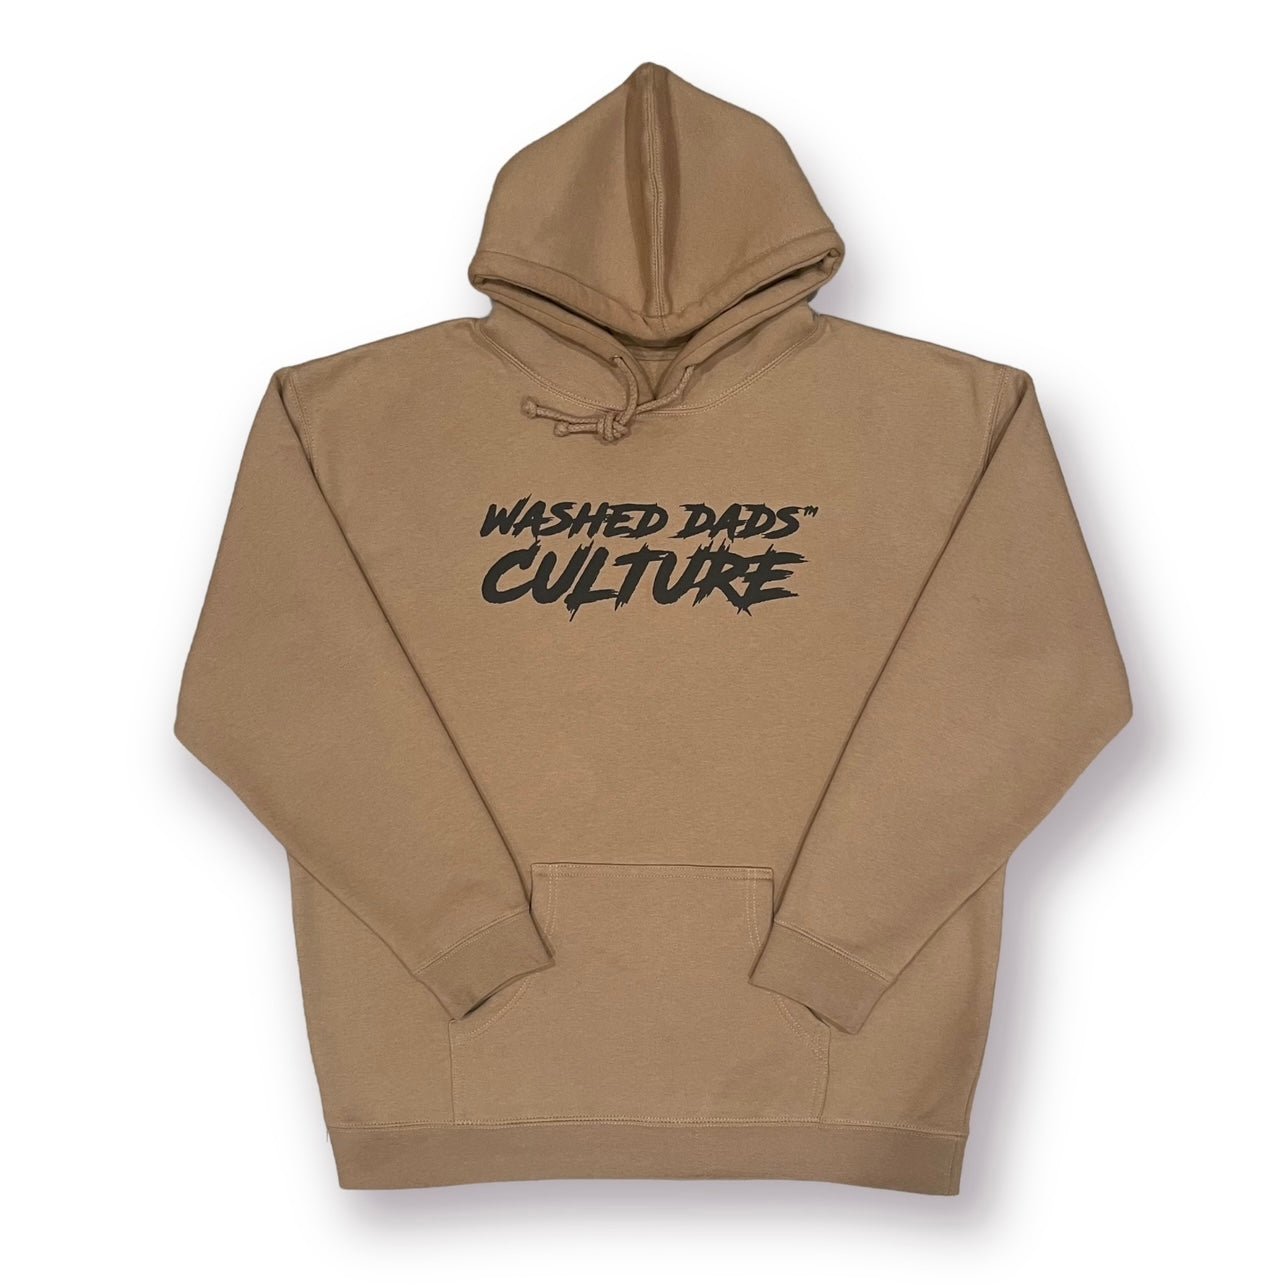 WD Culture Hoodie